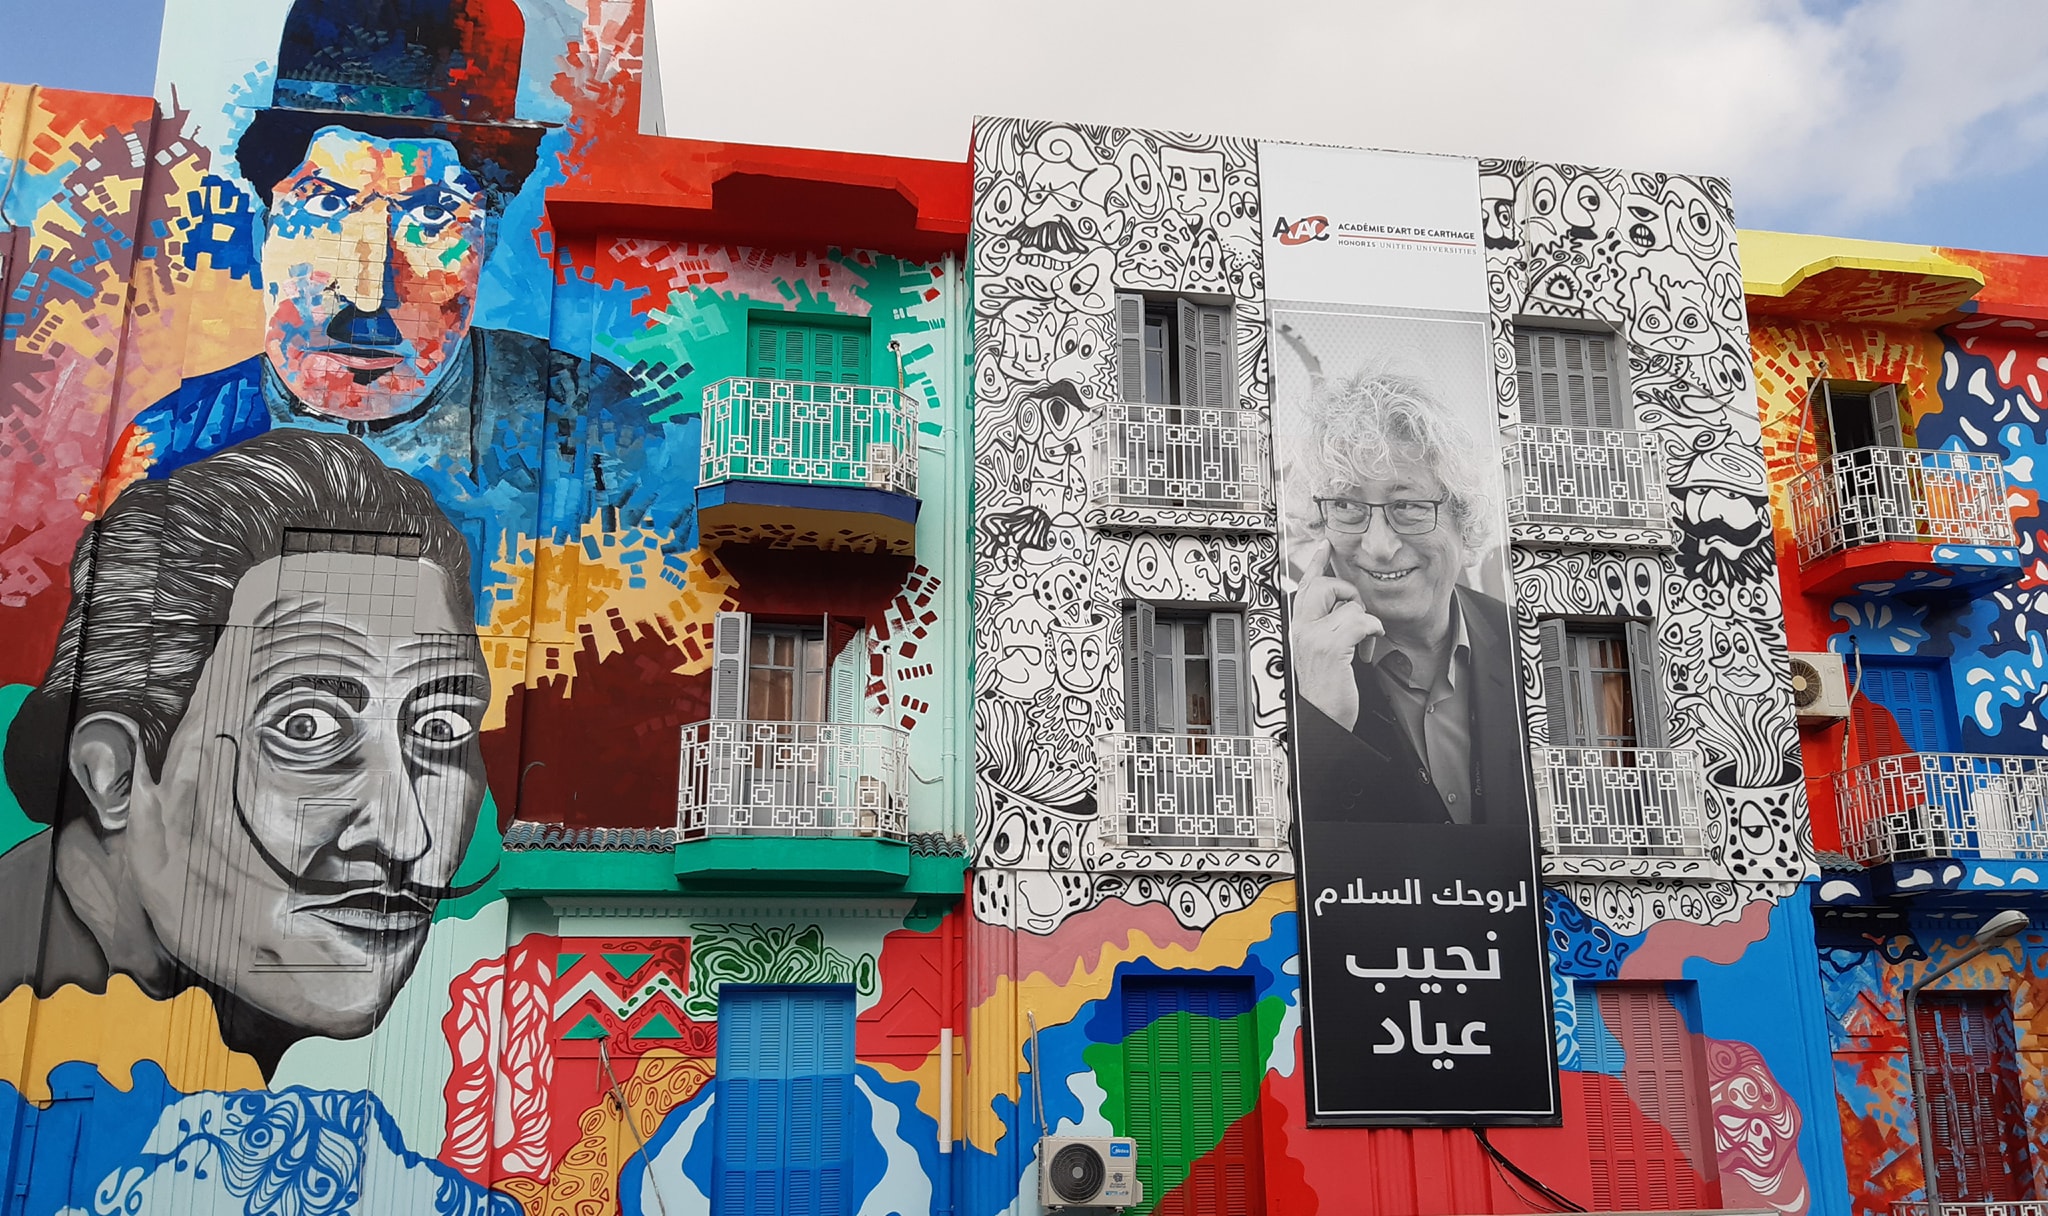 بفضل "أيام قرطاج السينمائية"، يتحول شارع الحبيب بورقيبة إلى محطة هامة ينزل فيها قرابة مليوني شخص لمدة أسبوع